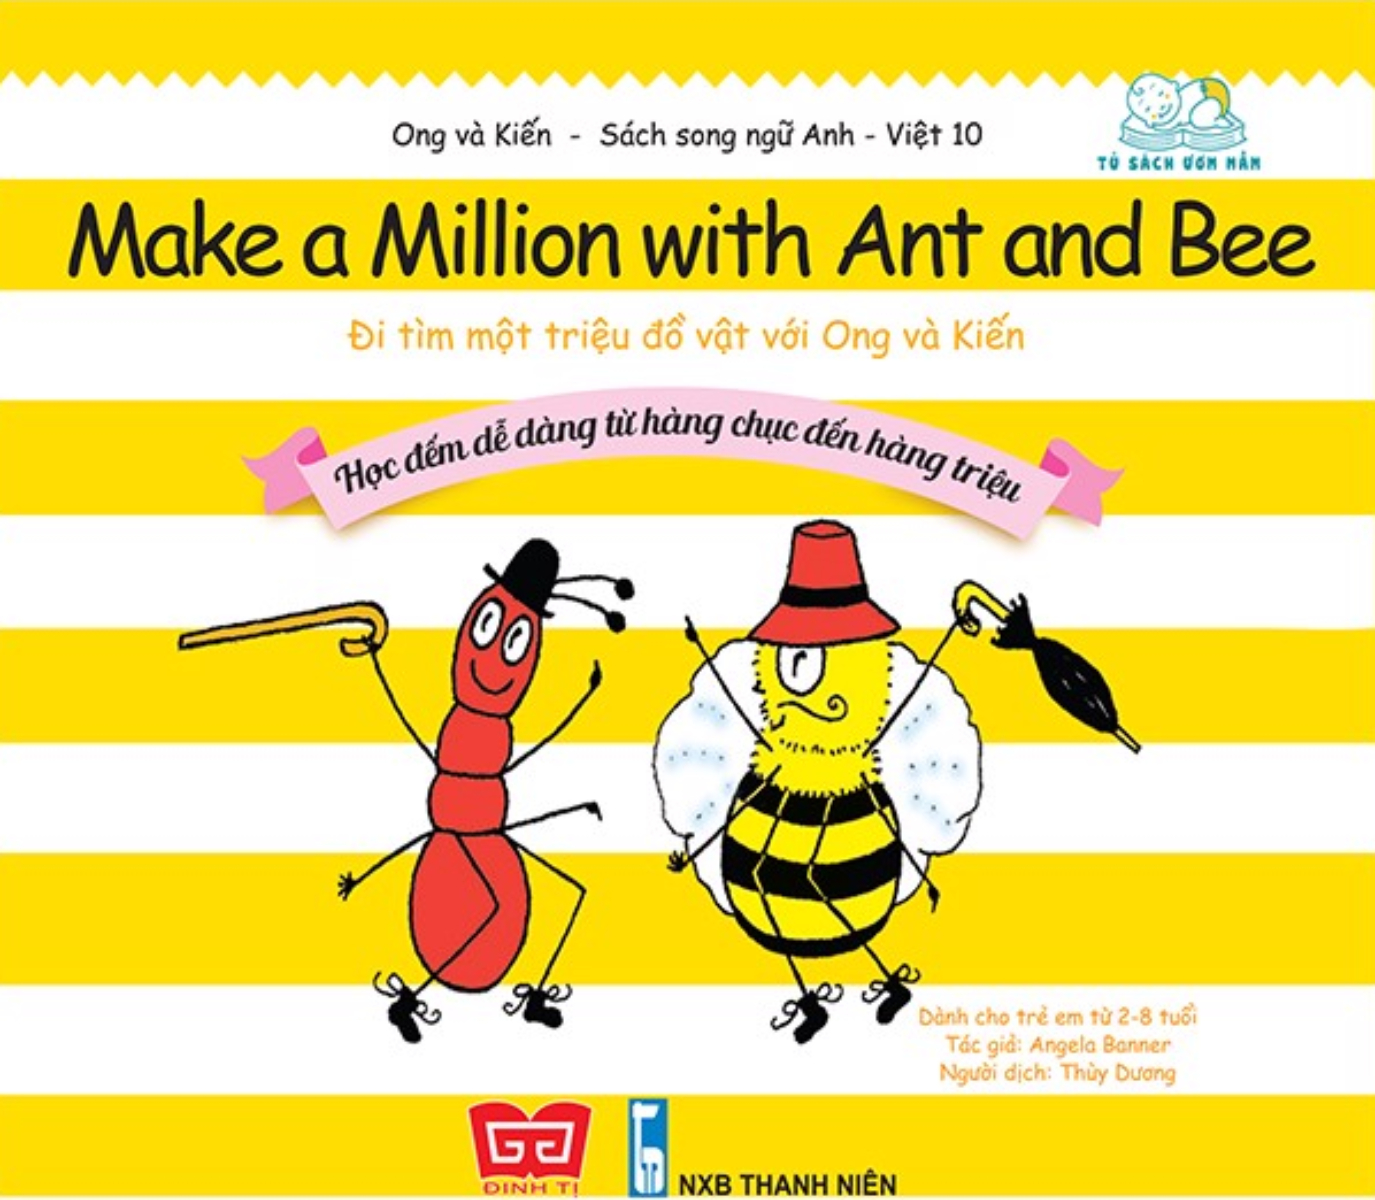 ONG VÀ KIẾN - TẬP 10 - MAKE A MILLION WITH ANT AND BEE - ĐI TÌM MỘT TRIỆU ĐỒ VẬT VỚI ONG VÀ KIẾN - HỌC ĐẾM DỄ DÀNG TỪ HÀNG CHỤC ĐẾN HÀNG TRIỆU_DTI